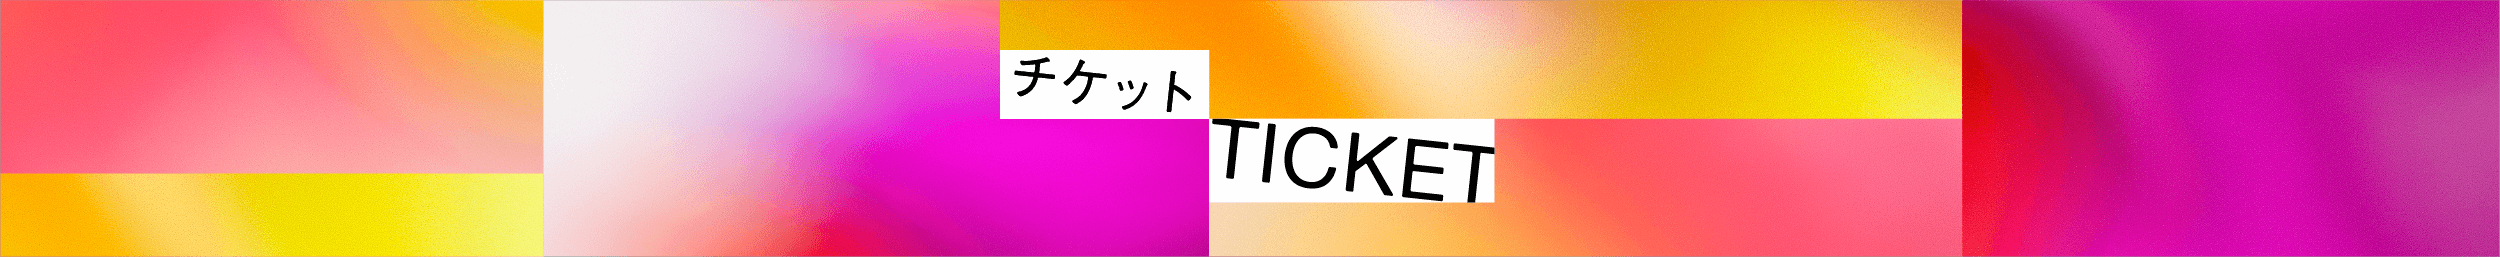 チケット / TICKET